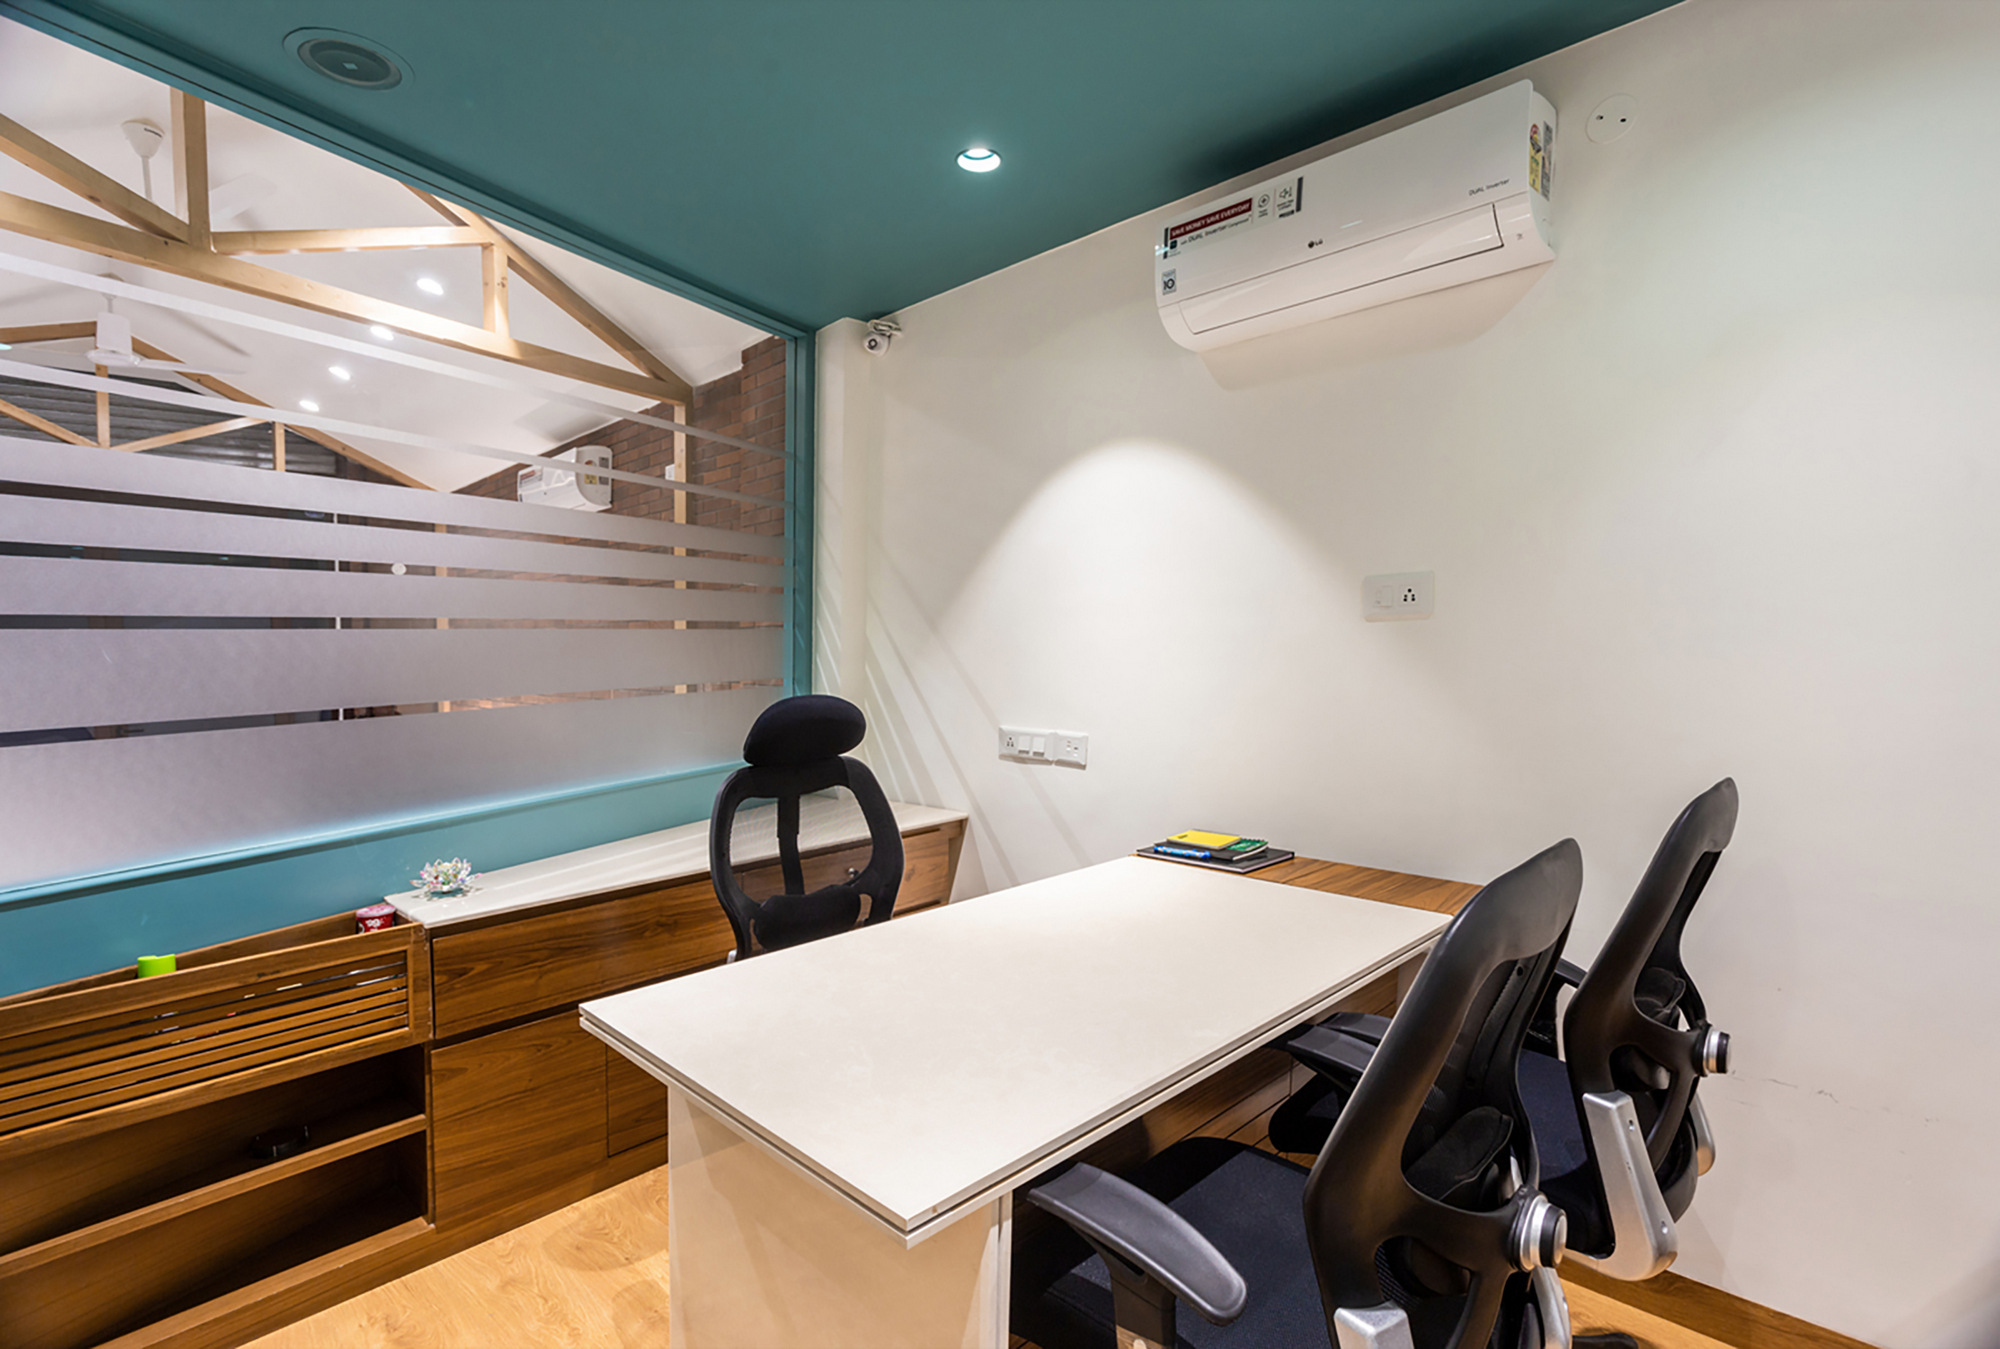 图片[6]|Sindhuja医生牙科诊所|ART-Arrakis | 建筑室内设计的创新与灵感